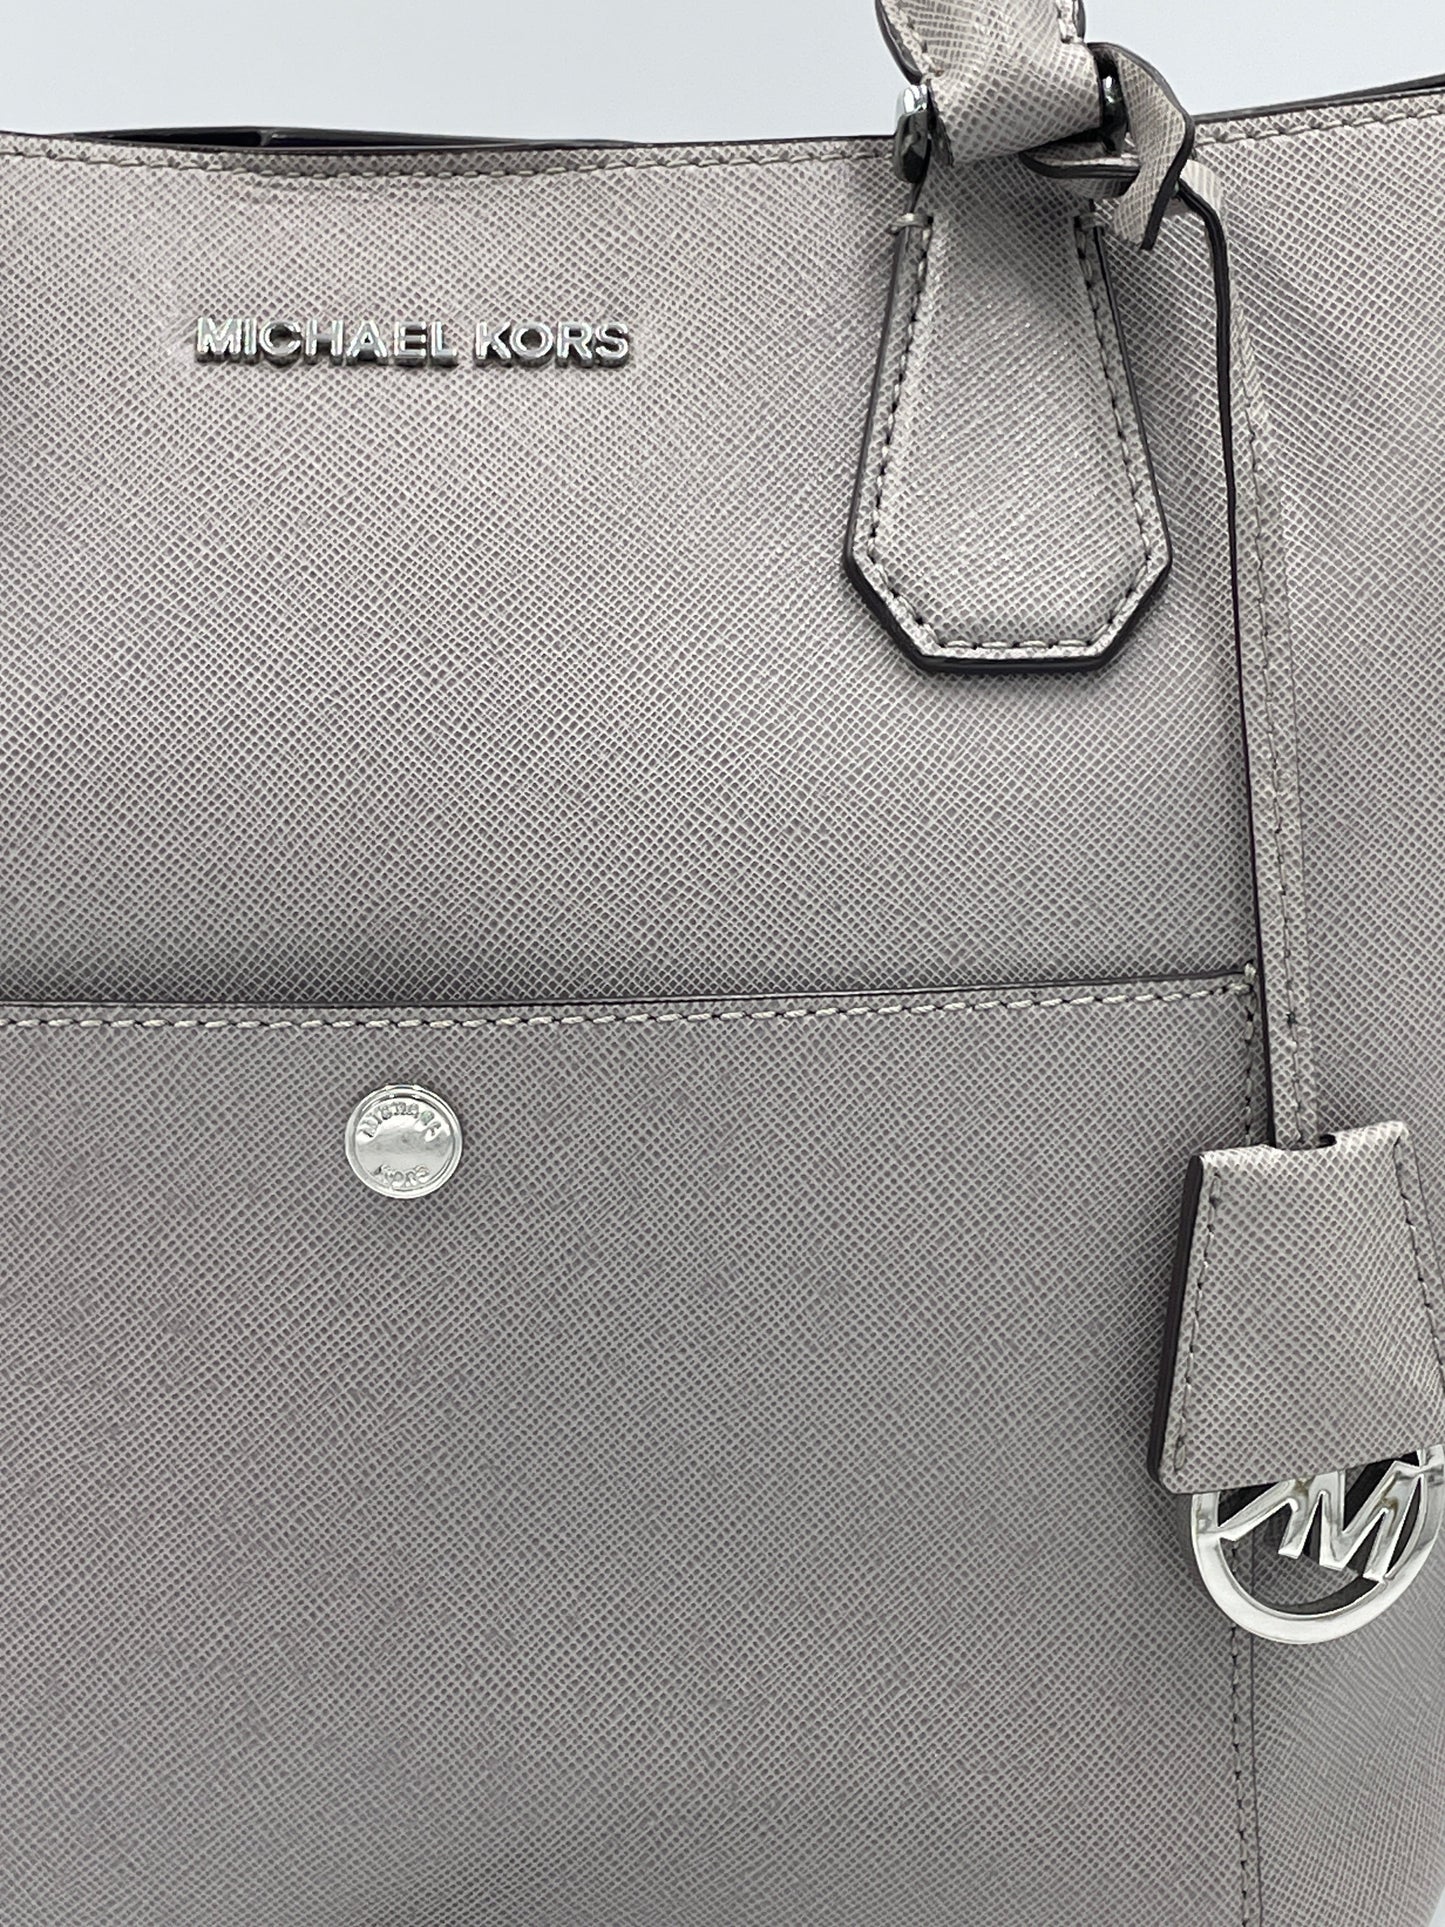 Tote / Handbag Designer Michael Kors